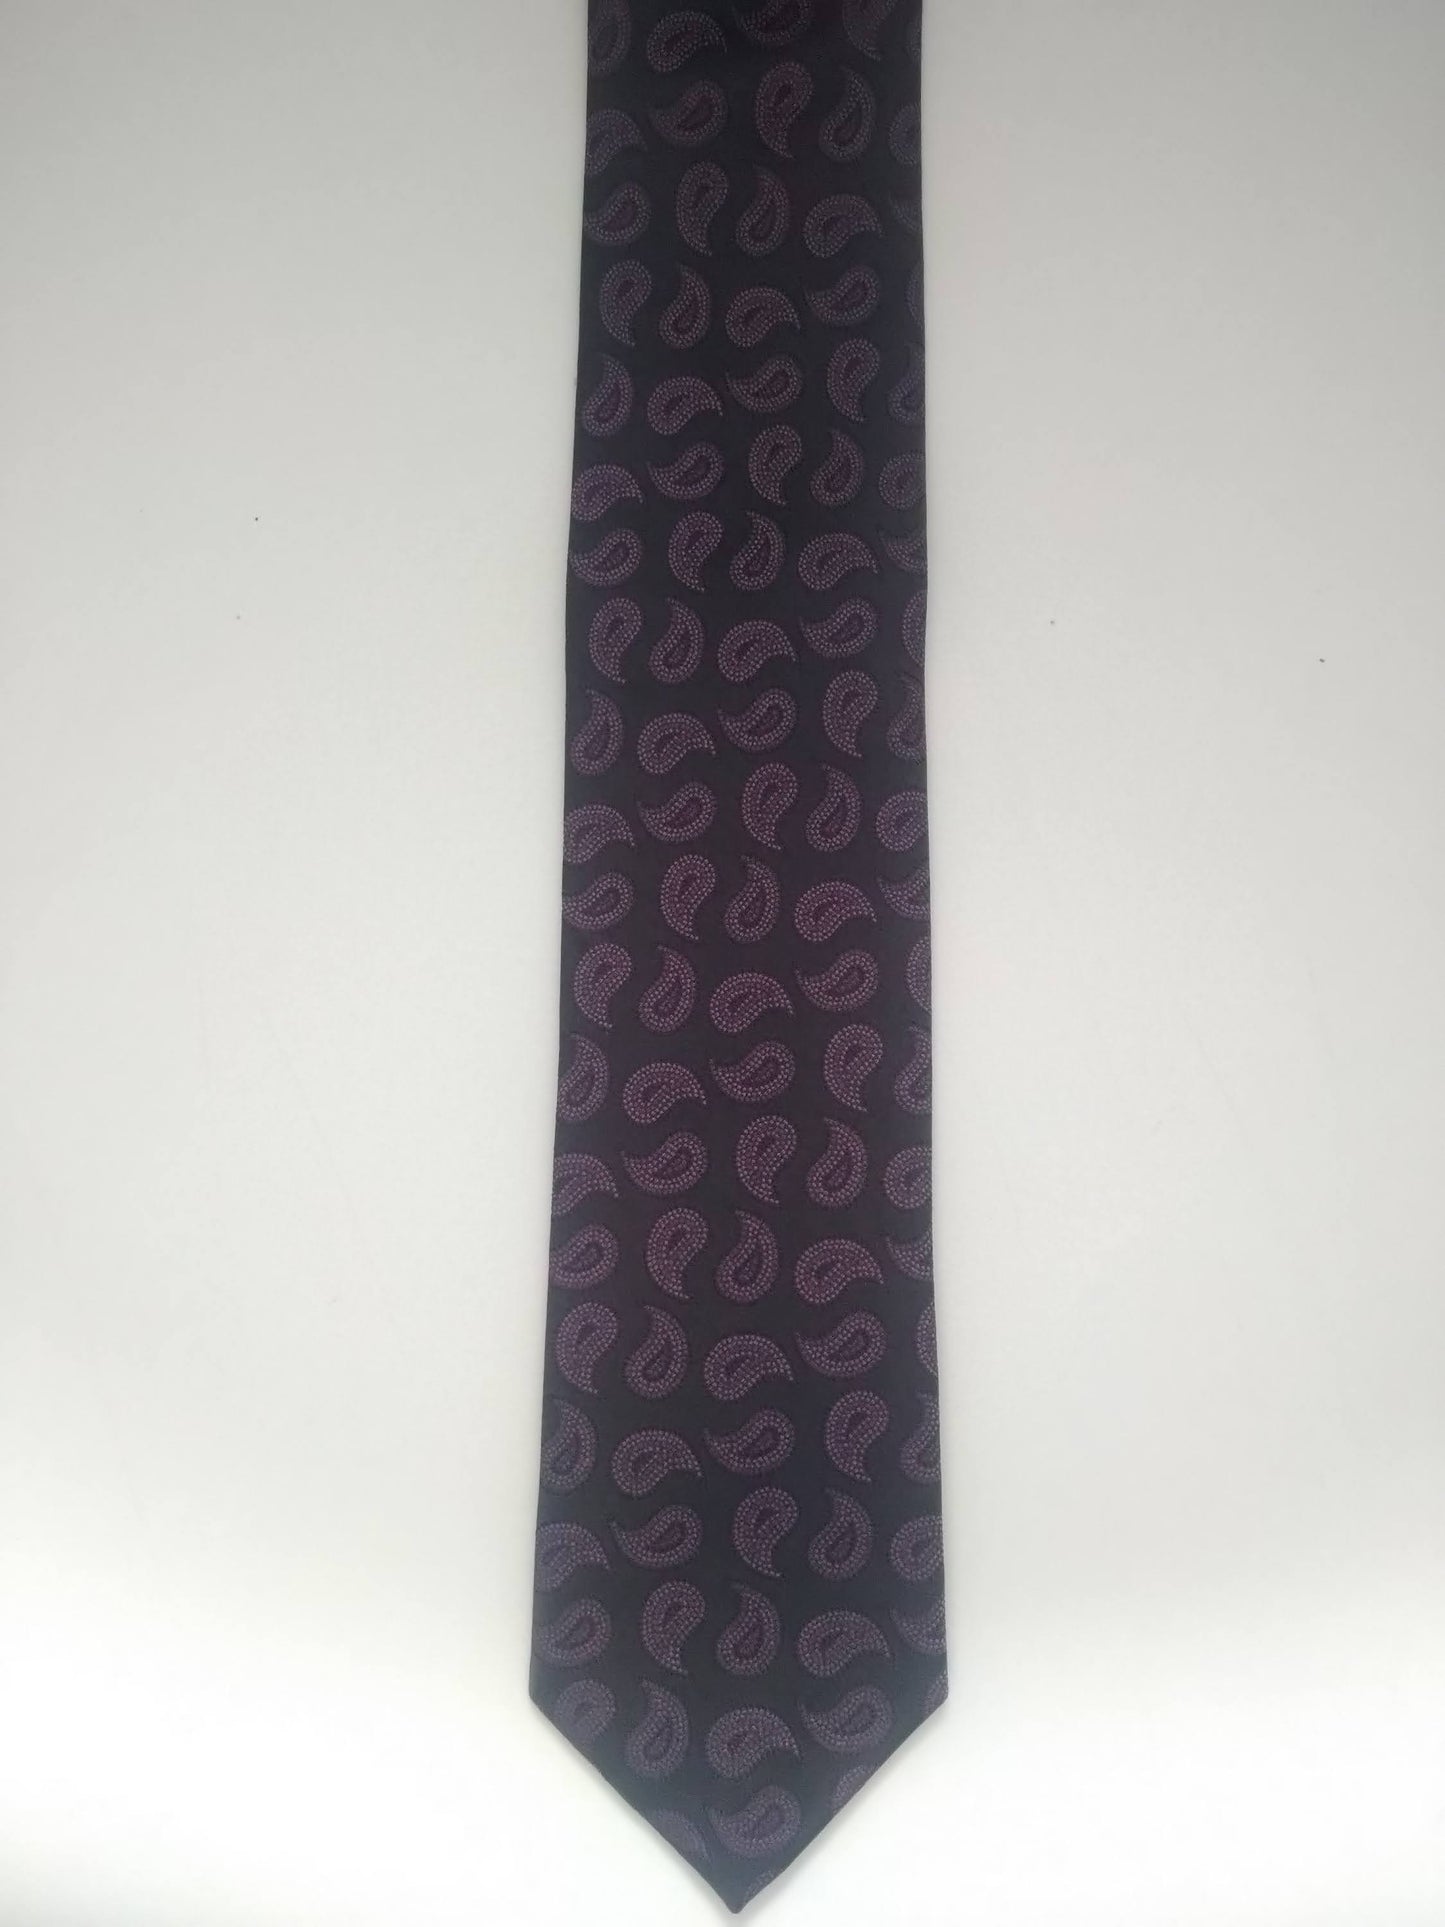 Cravate Vintage. Motif violet noir. Soie